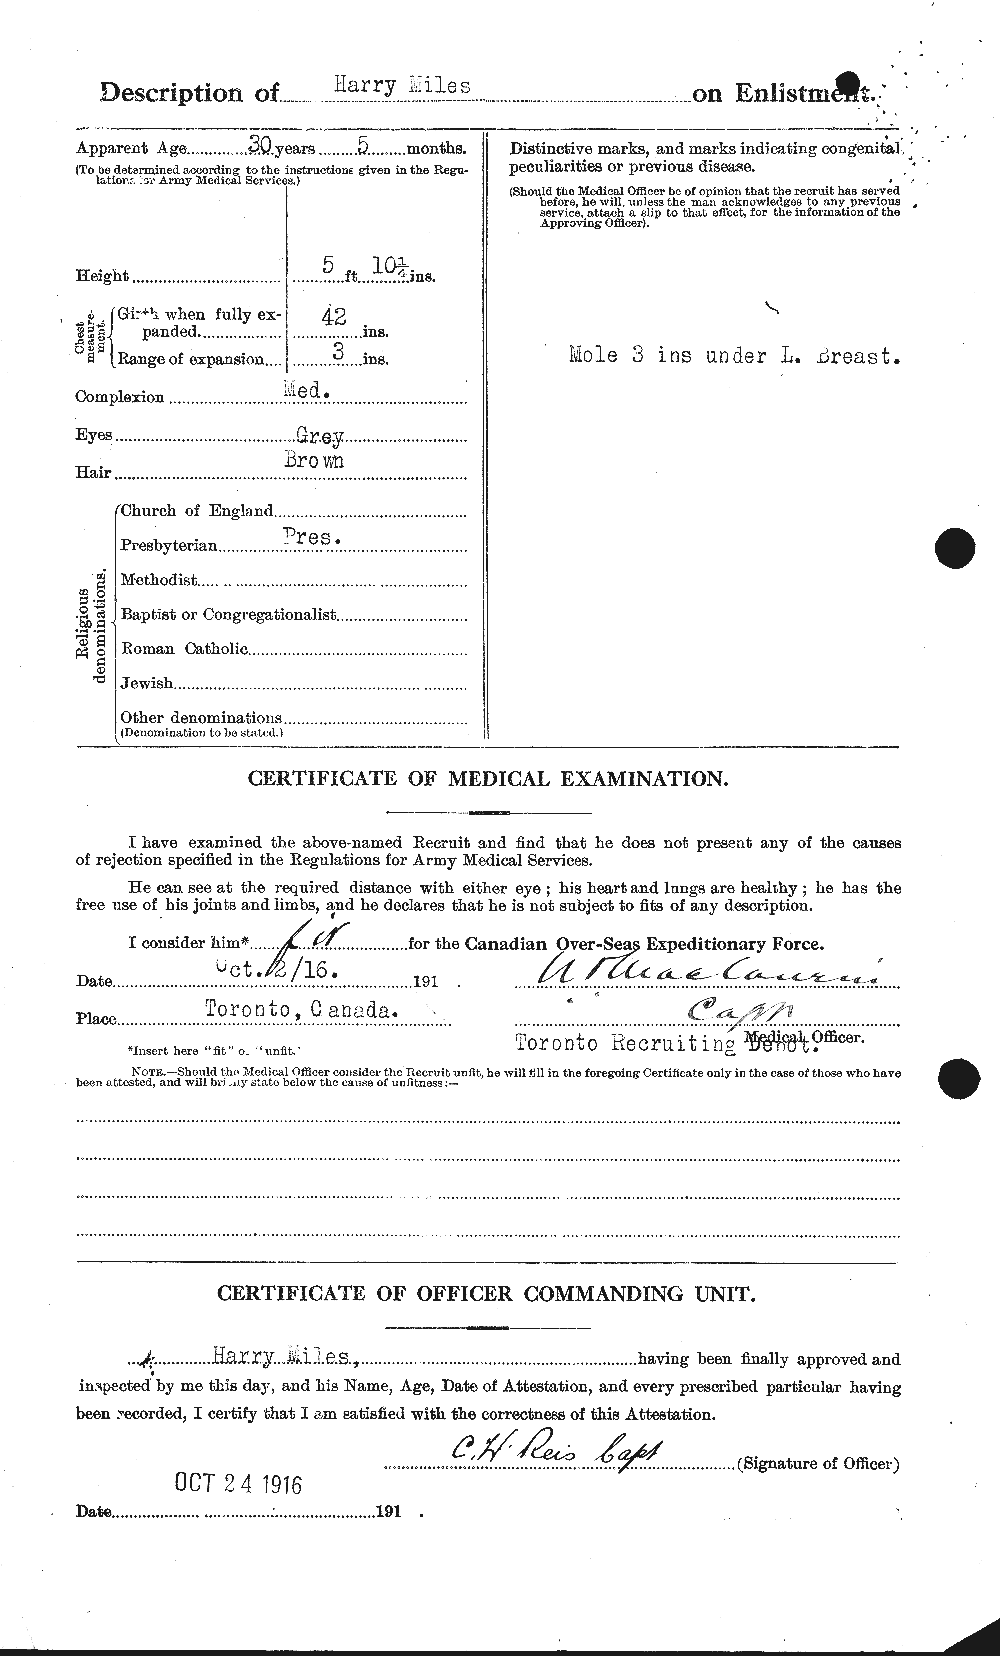 Dossiers du Personnel de la Première Guerre mondiale - CEC 492469b